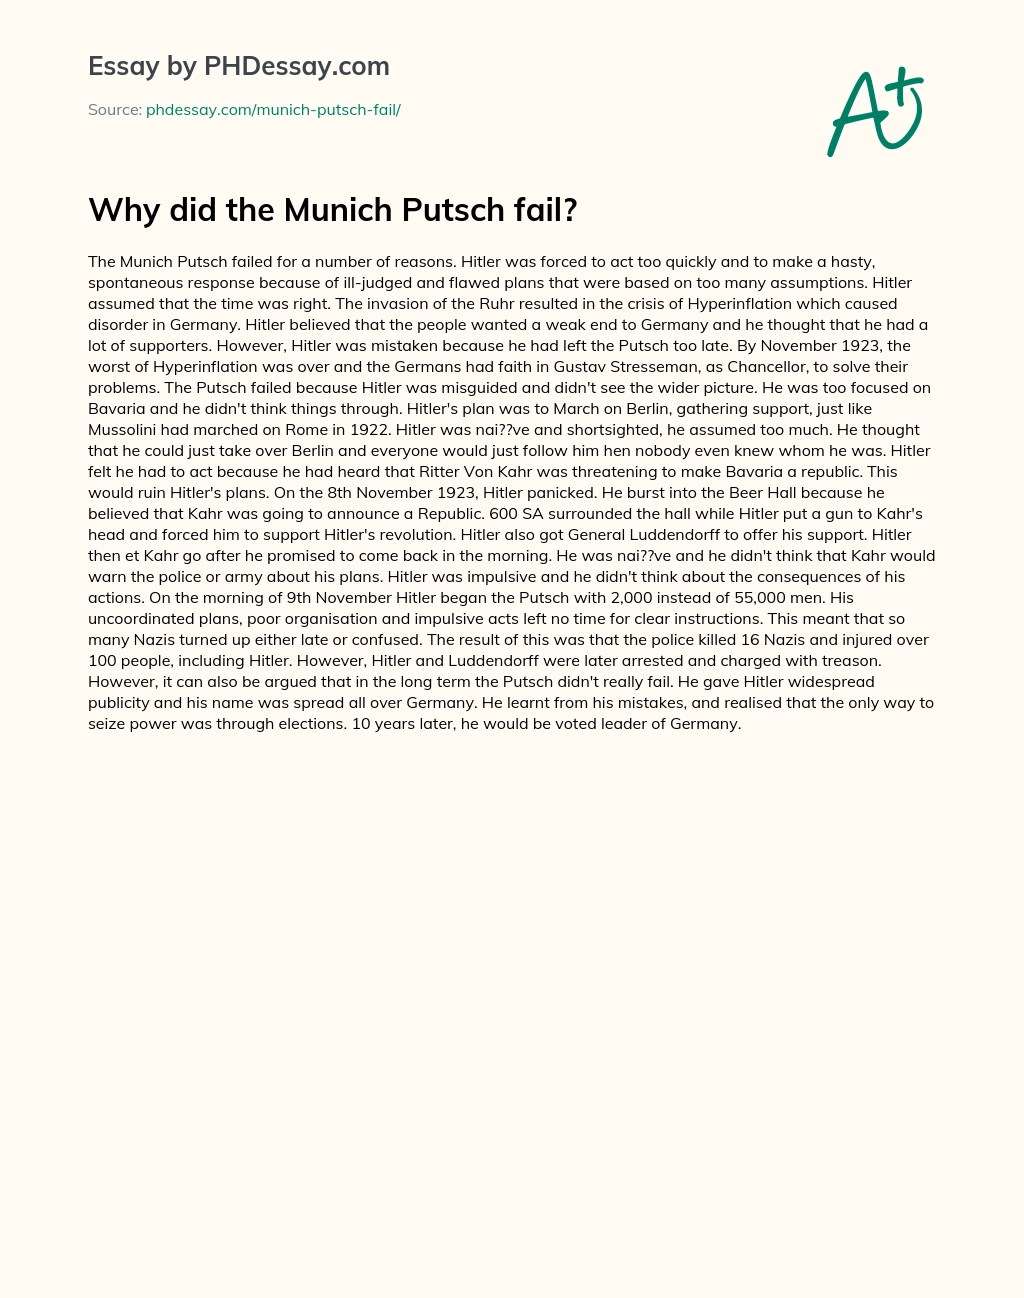 Why did the Munich Putsch fail? essay